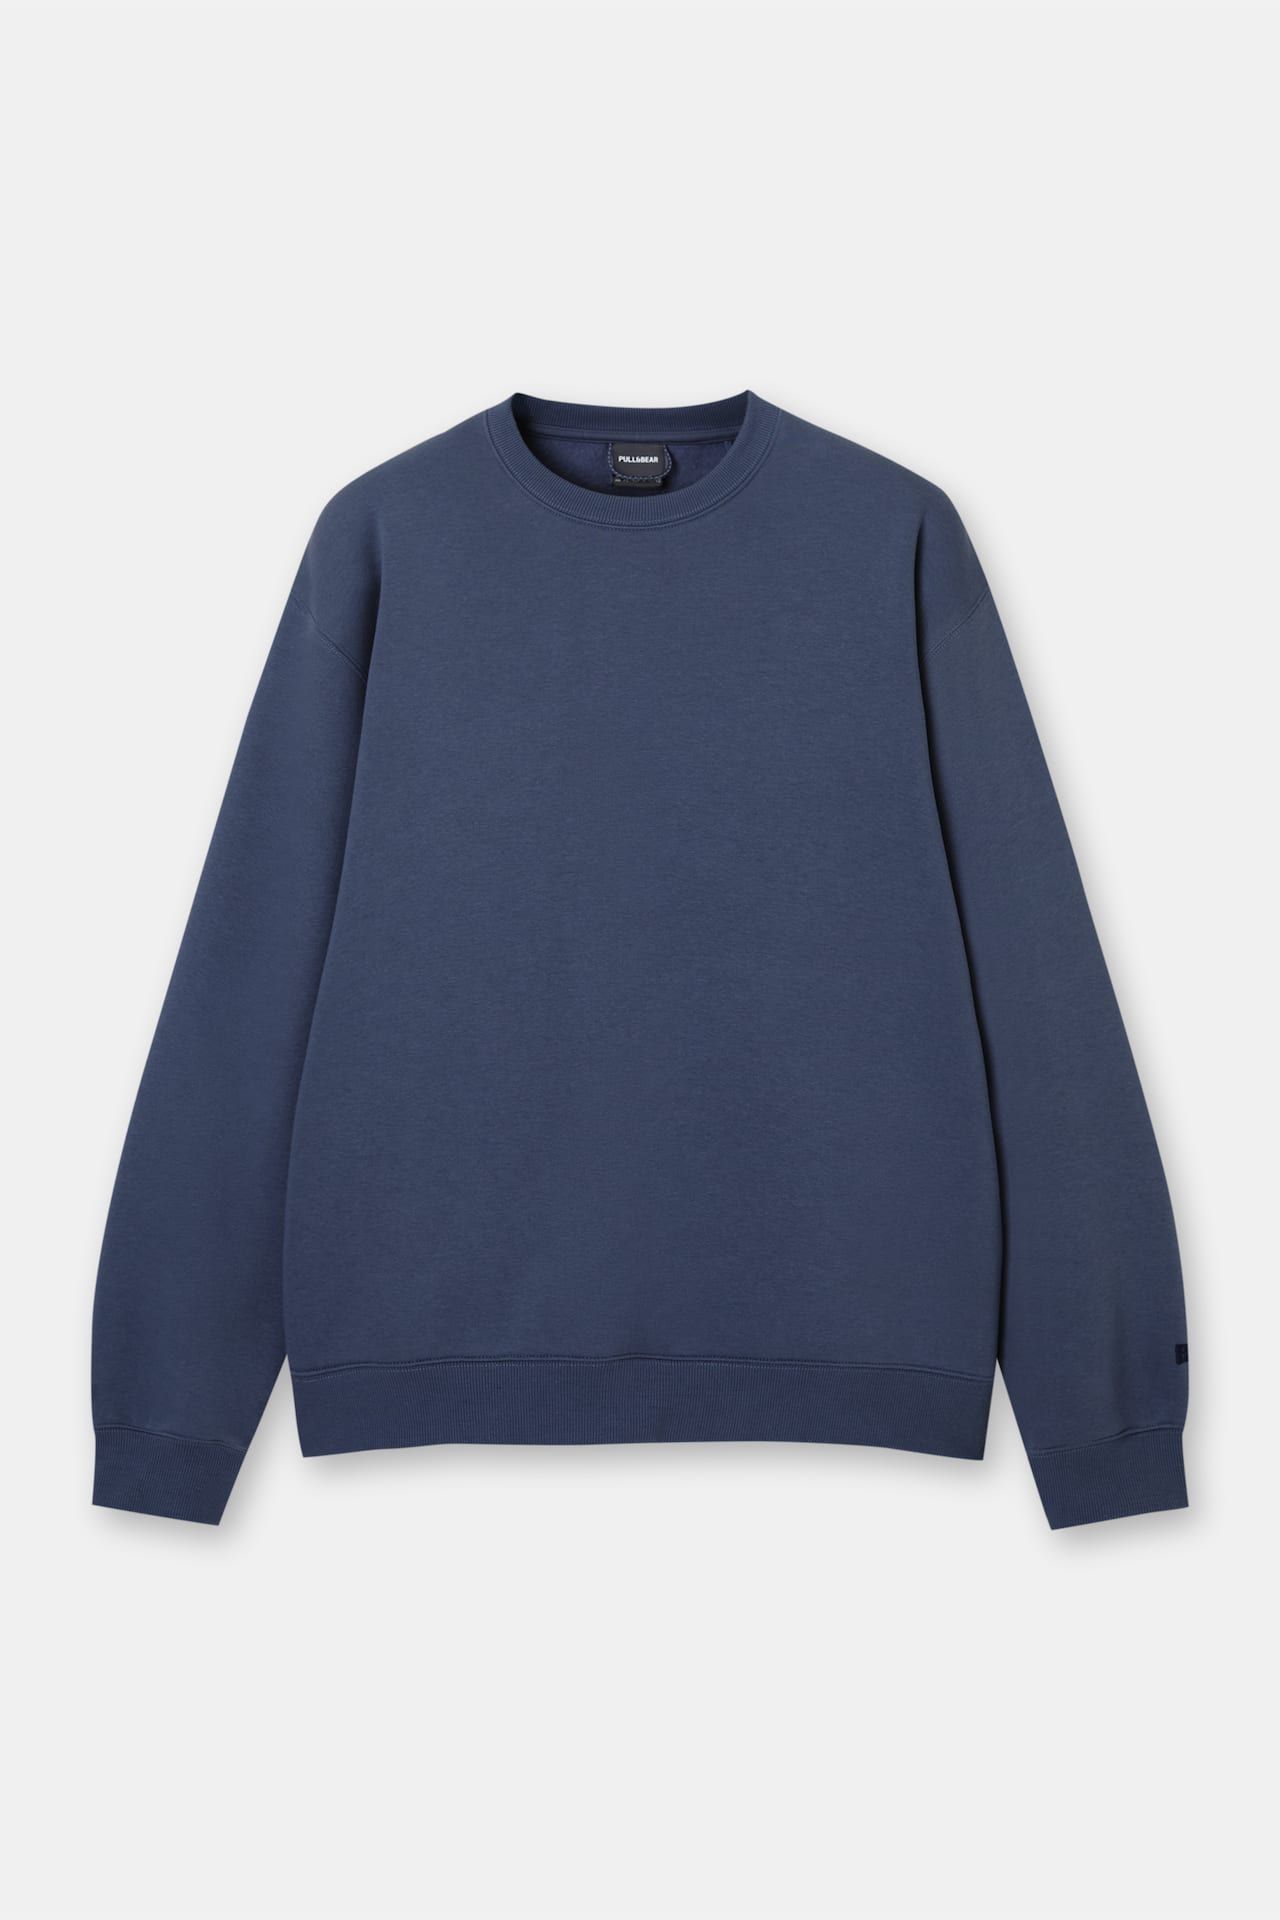 Basic round neck sweatshirt | PULL and BEAR UK